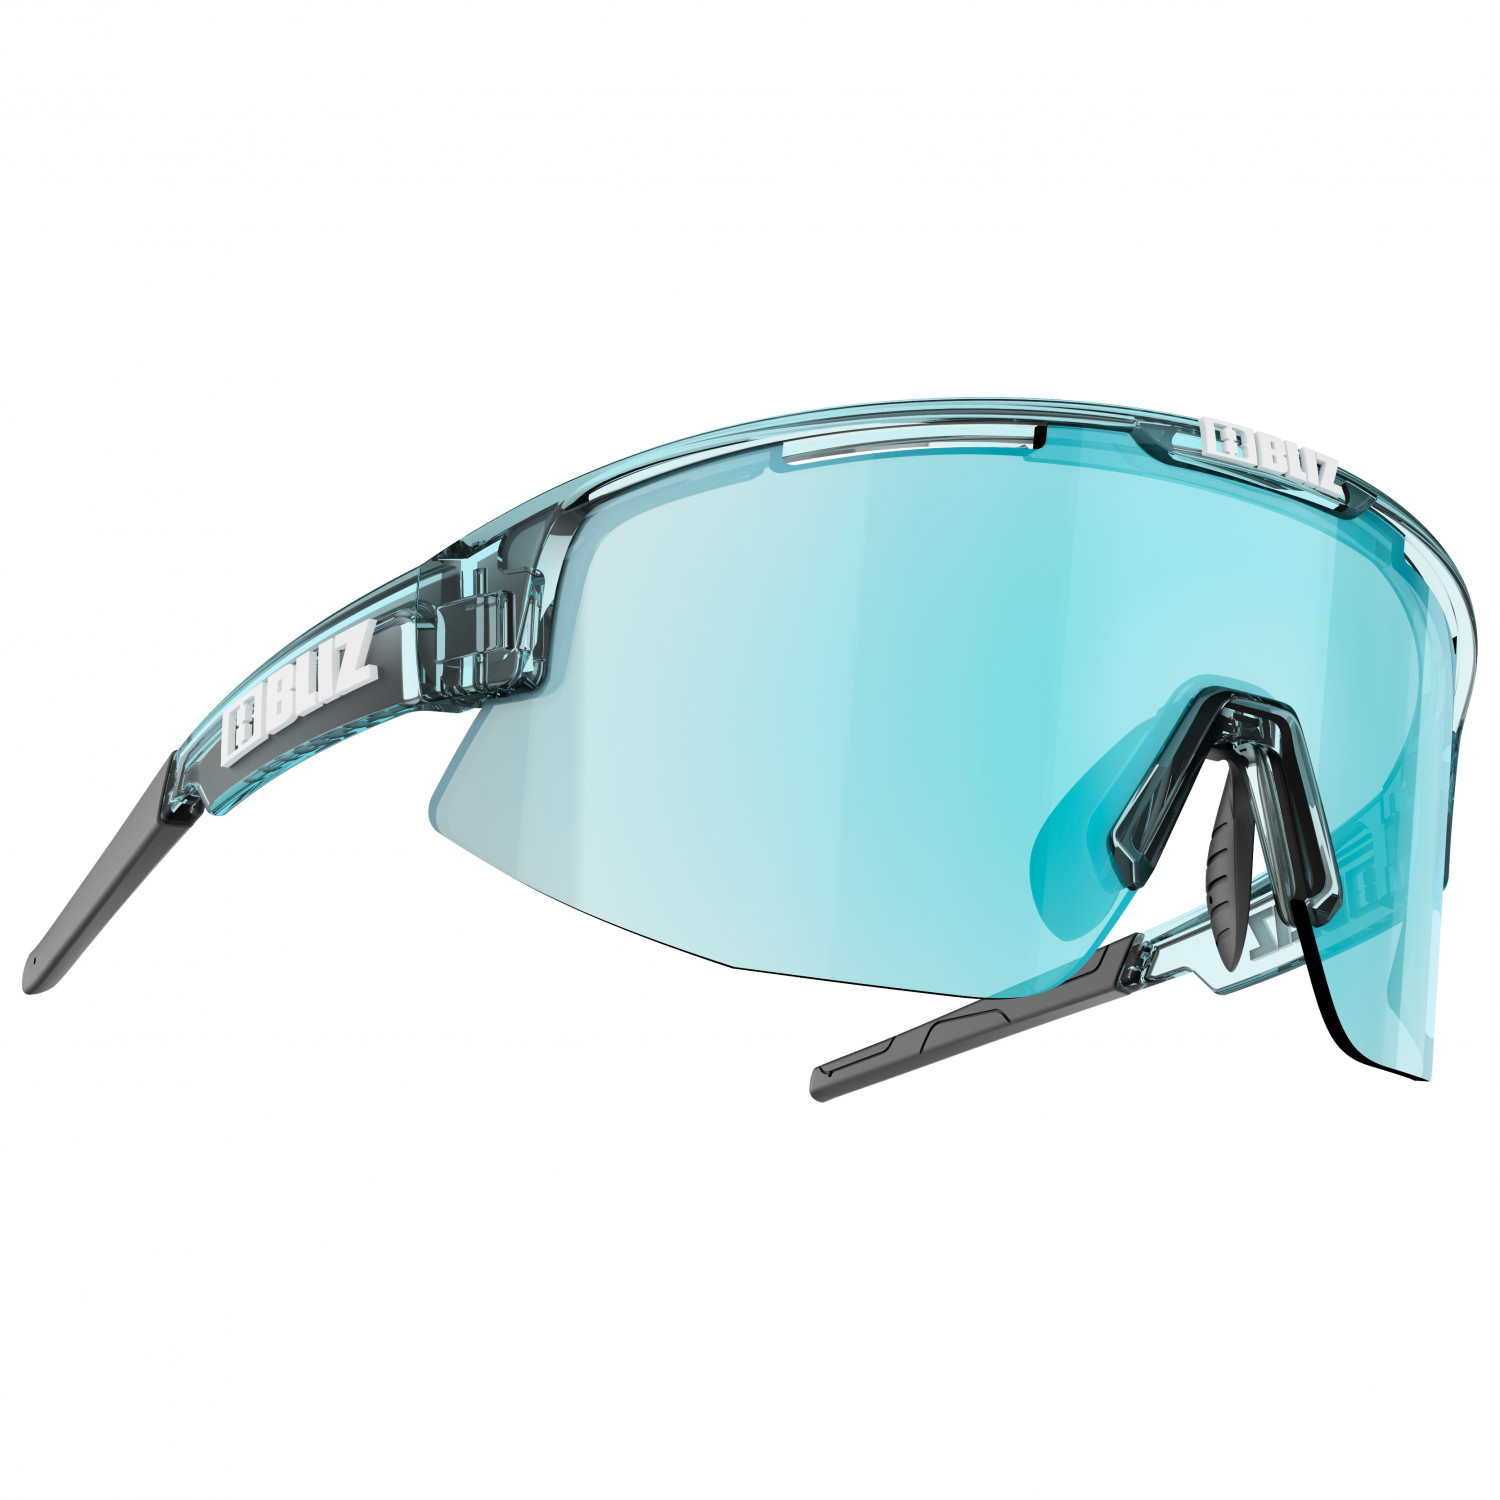 Велосипедные очки Bliz Matrix S3 VLT 14%, цвет Transparent Blue